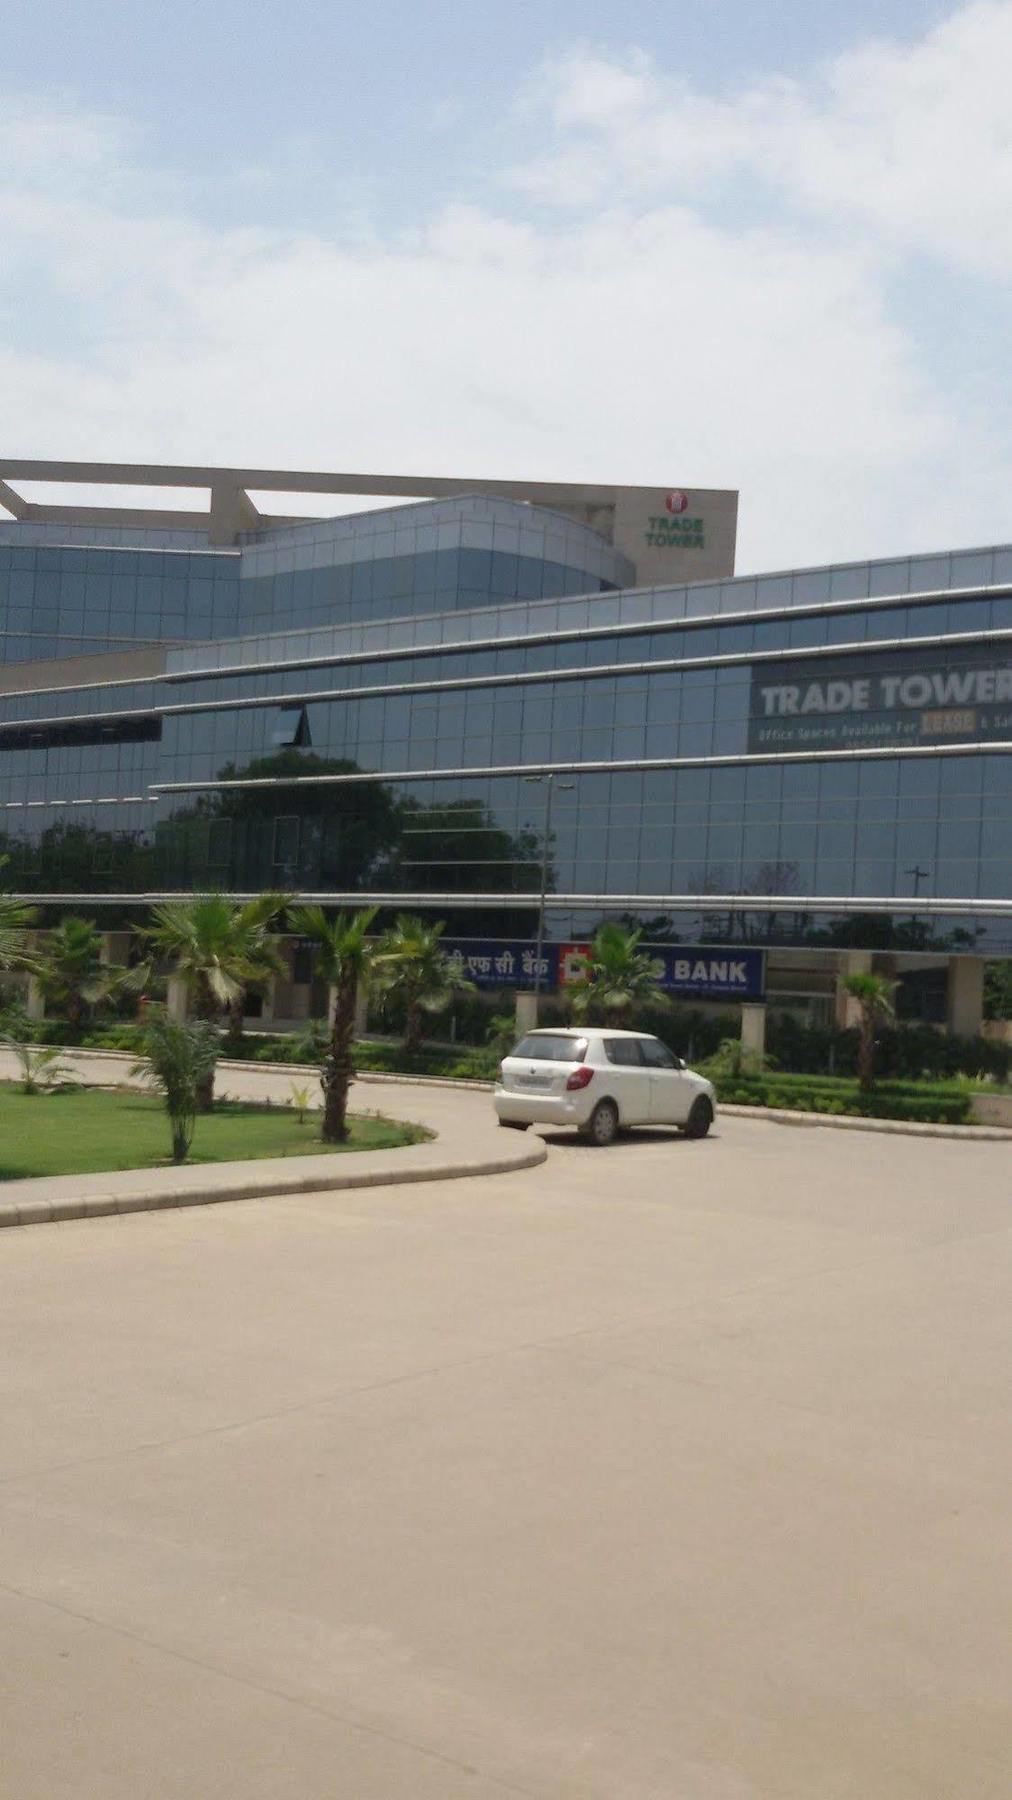 Trinity Corporate Udyog Vihar Hotel Gurgaon Luaran gambar